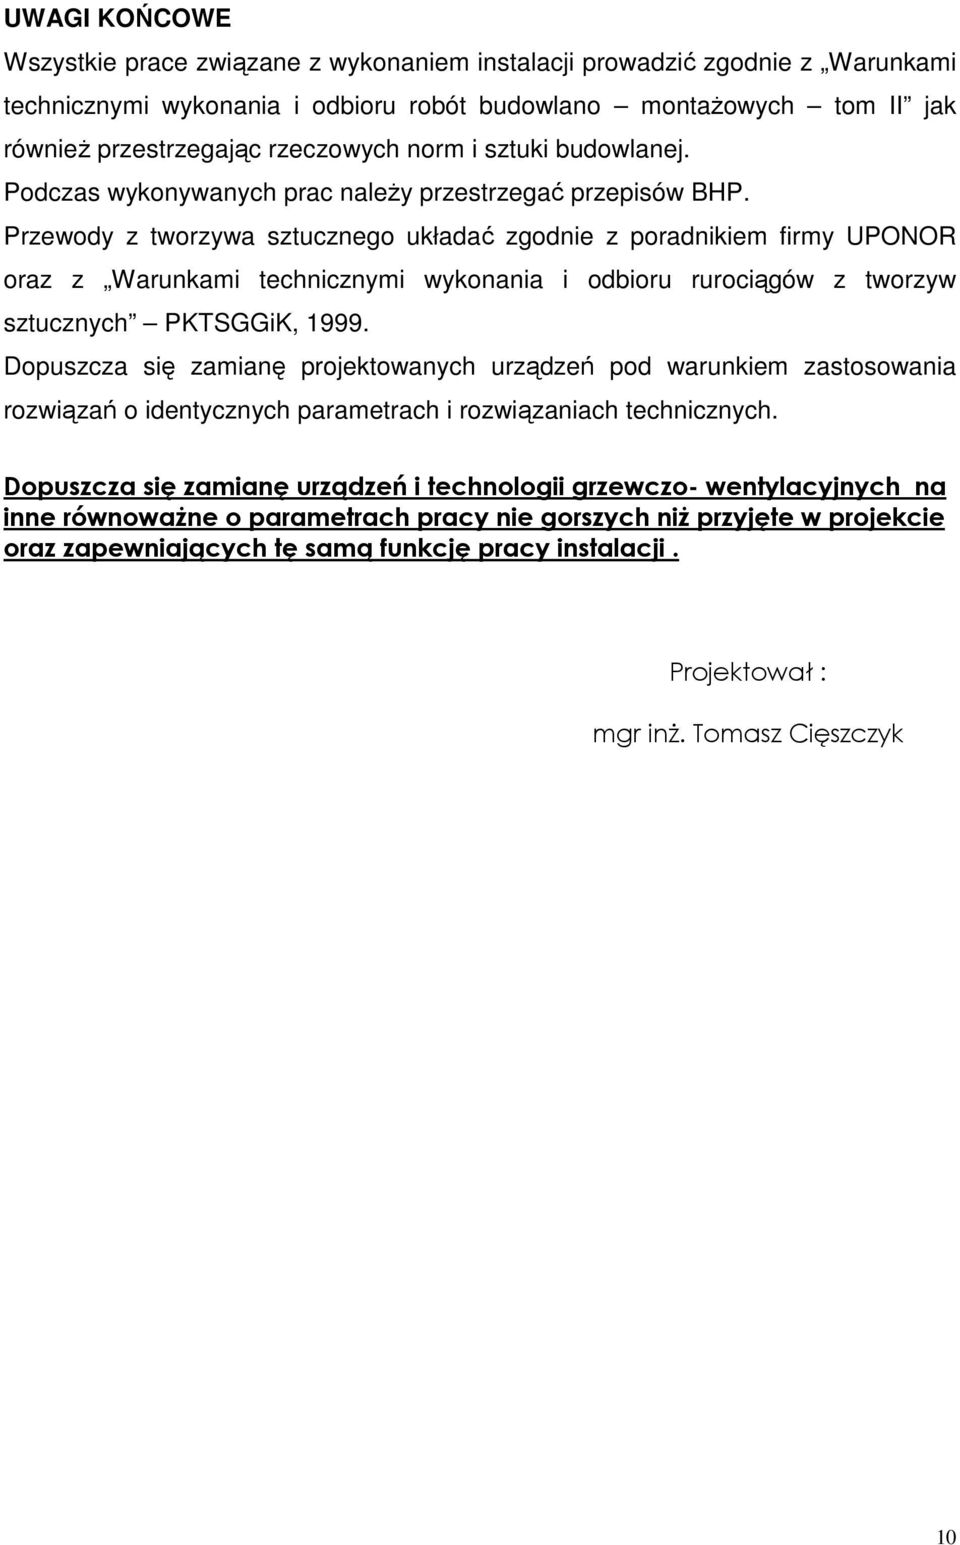 Przewody z tworzywa sztucznego układać zgodnie z poradnikiem firmy UPONOR oraz z Warunkami technicznymi wykonania i odbioru rurociągów z tworzyw sztucznych PKTSGGiK, 1999.